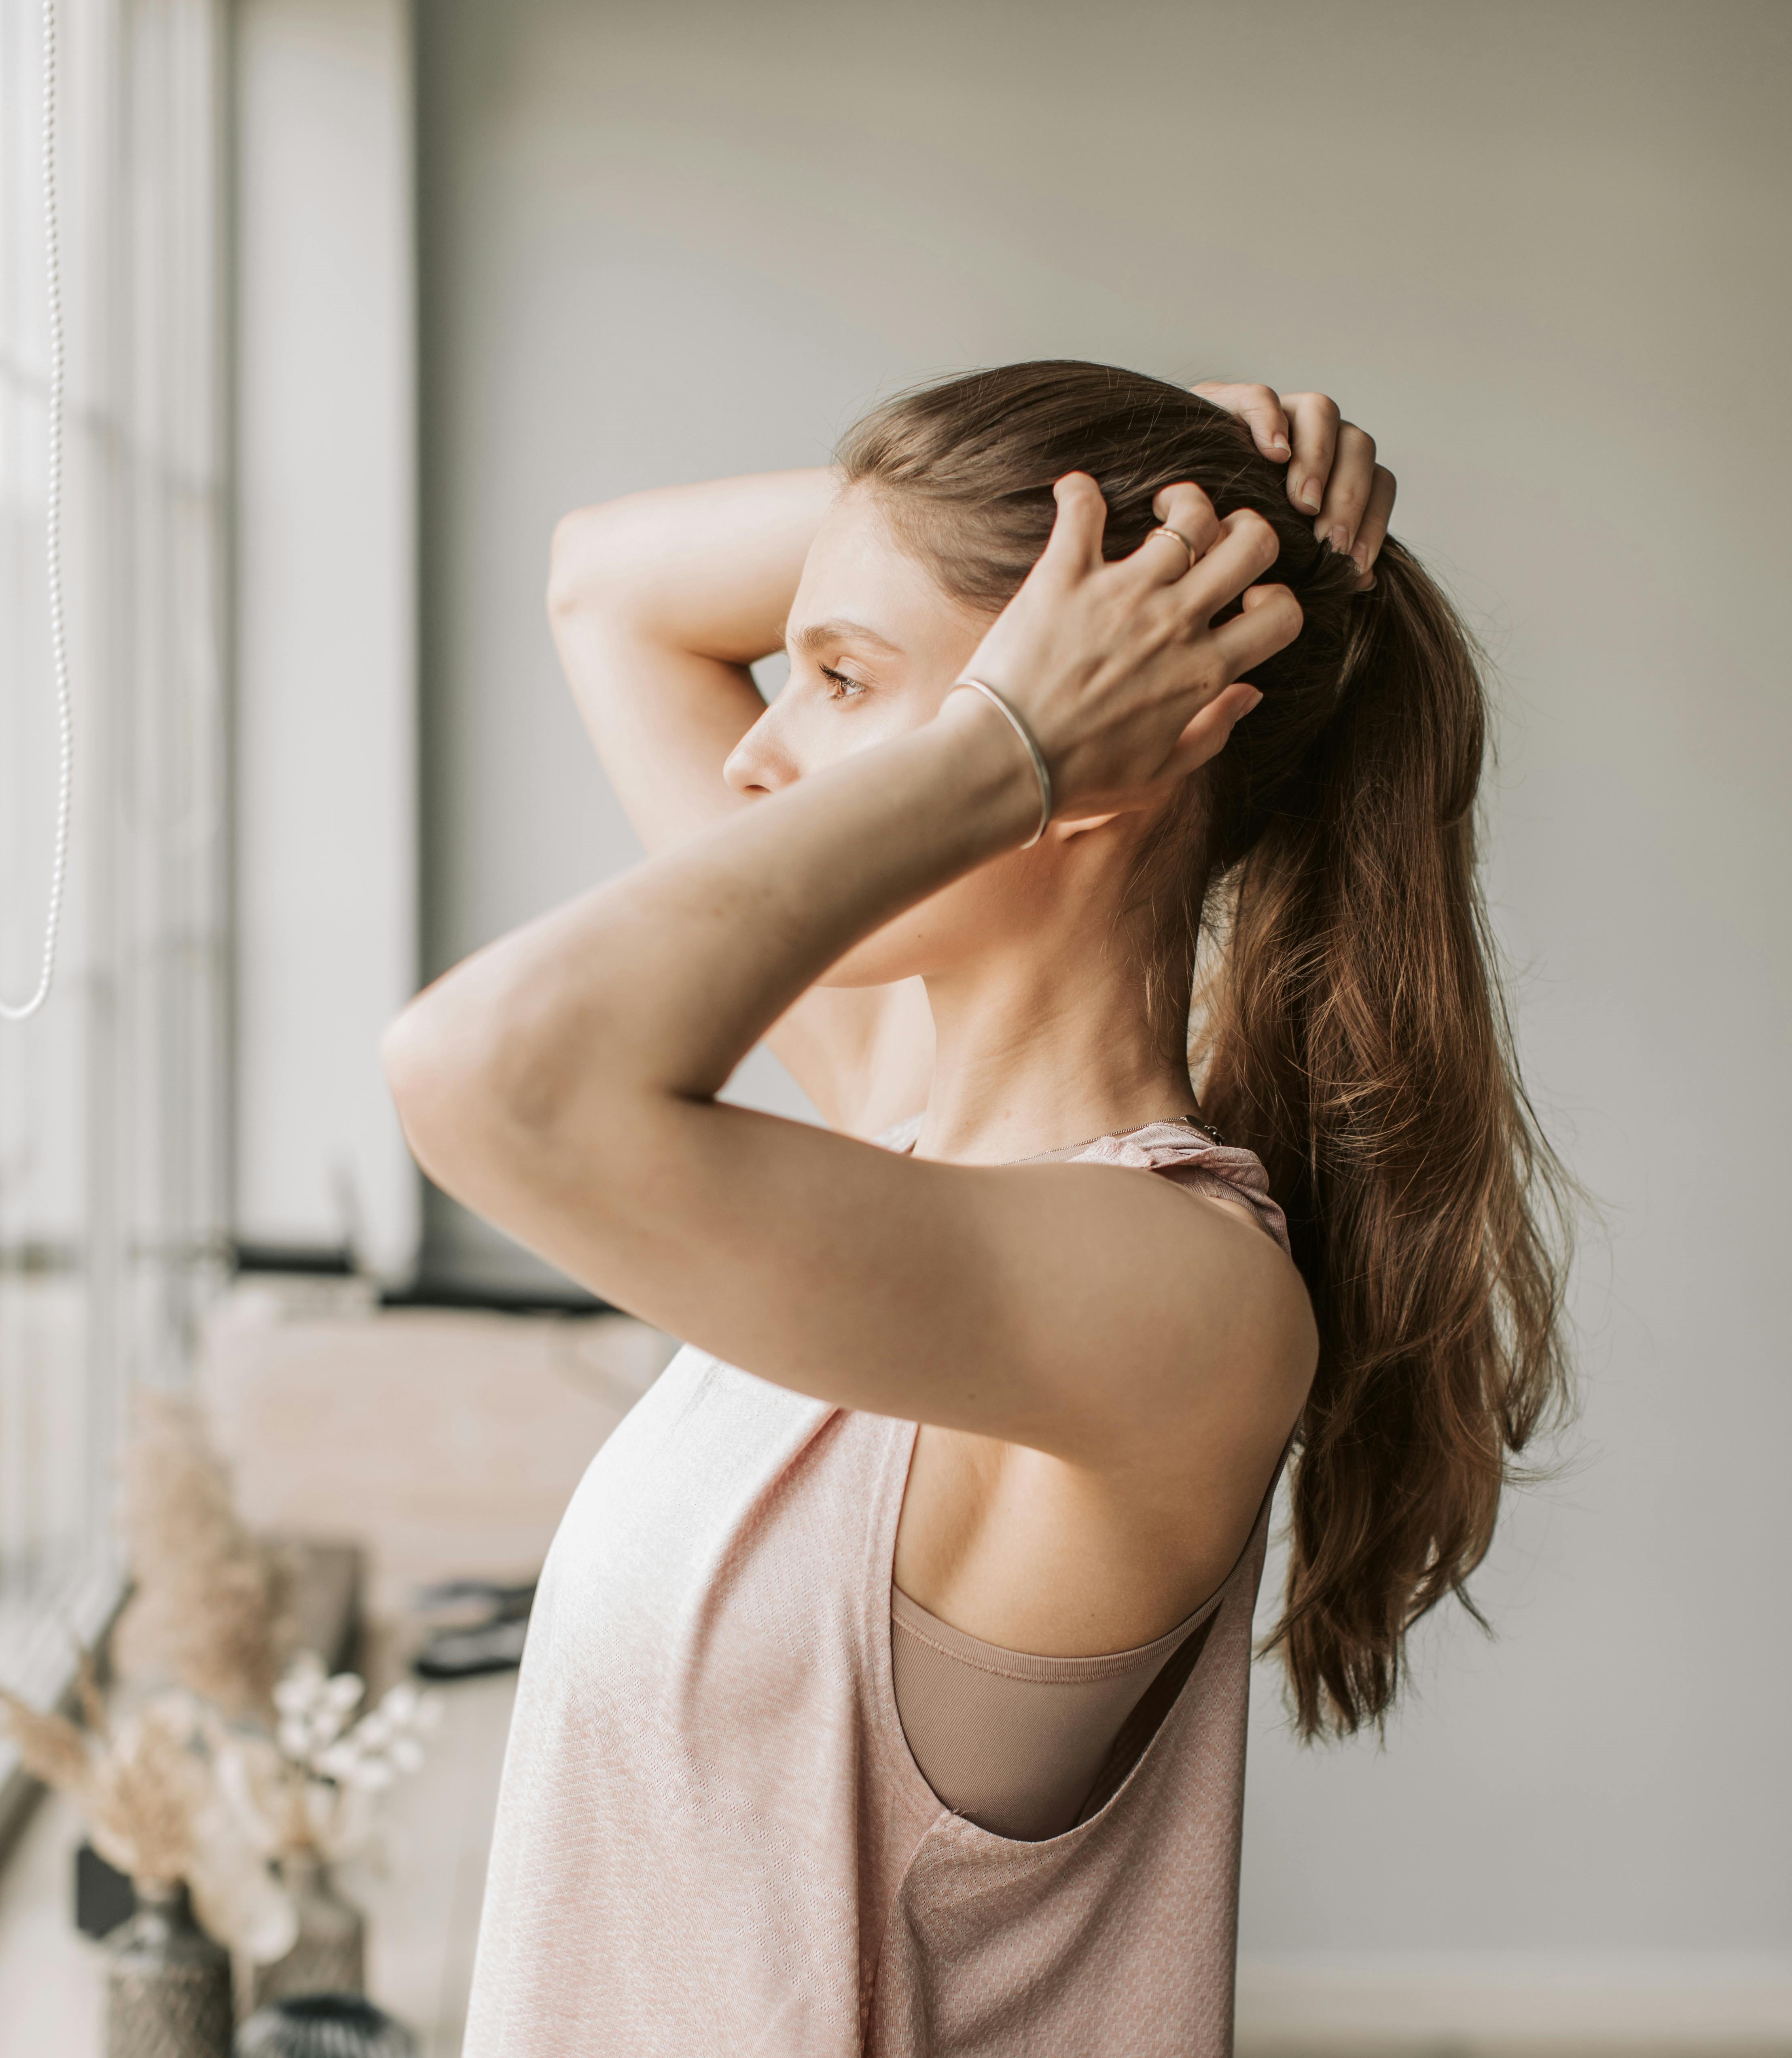 Mengatasi Sakit Kepala Akibat Mengikat Rambut: Penyebab dan Solusinya